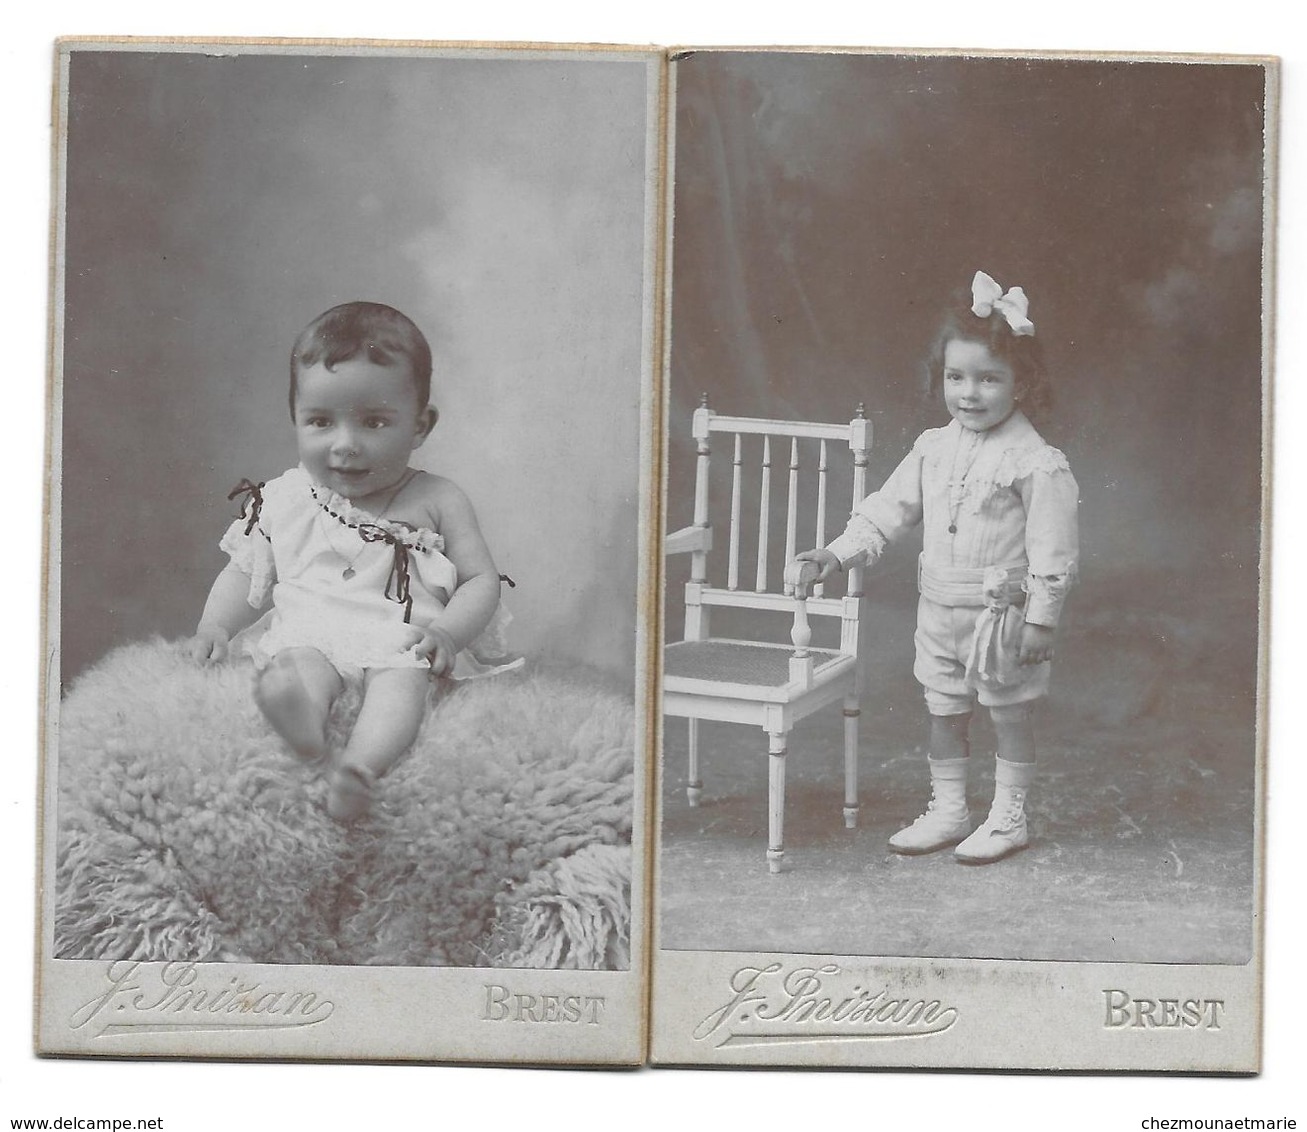 RAYMOND HILLAIRET FUTUR COMMISSAIRE DE LA MARINE NE EN 1906 A BREST - CDV PHOTO INIZAN LOT DE 2 - Berühmtheiten